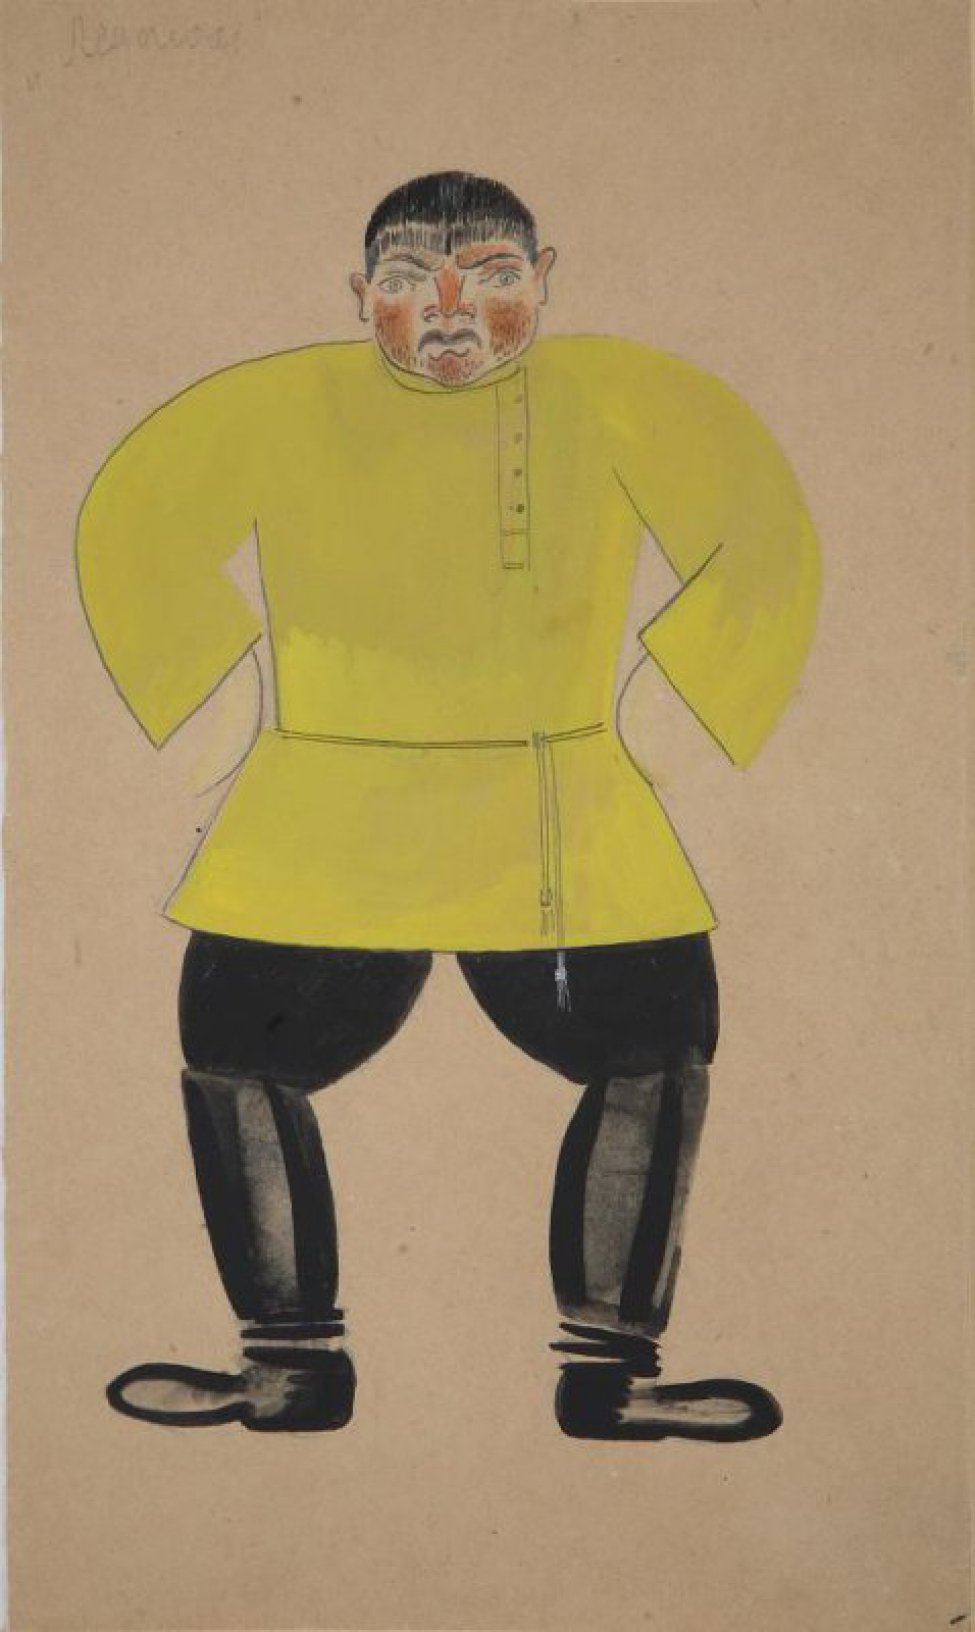 Изображен в рост, анфас мужчина с красным лицом в желтой рубашке-косоворотке, черных штанах и сапогах, стоящий уперев руки в бока, и широко расставив ноги, чуть согнутые в коленях.